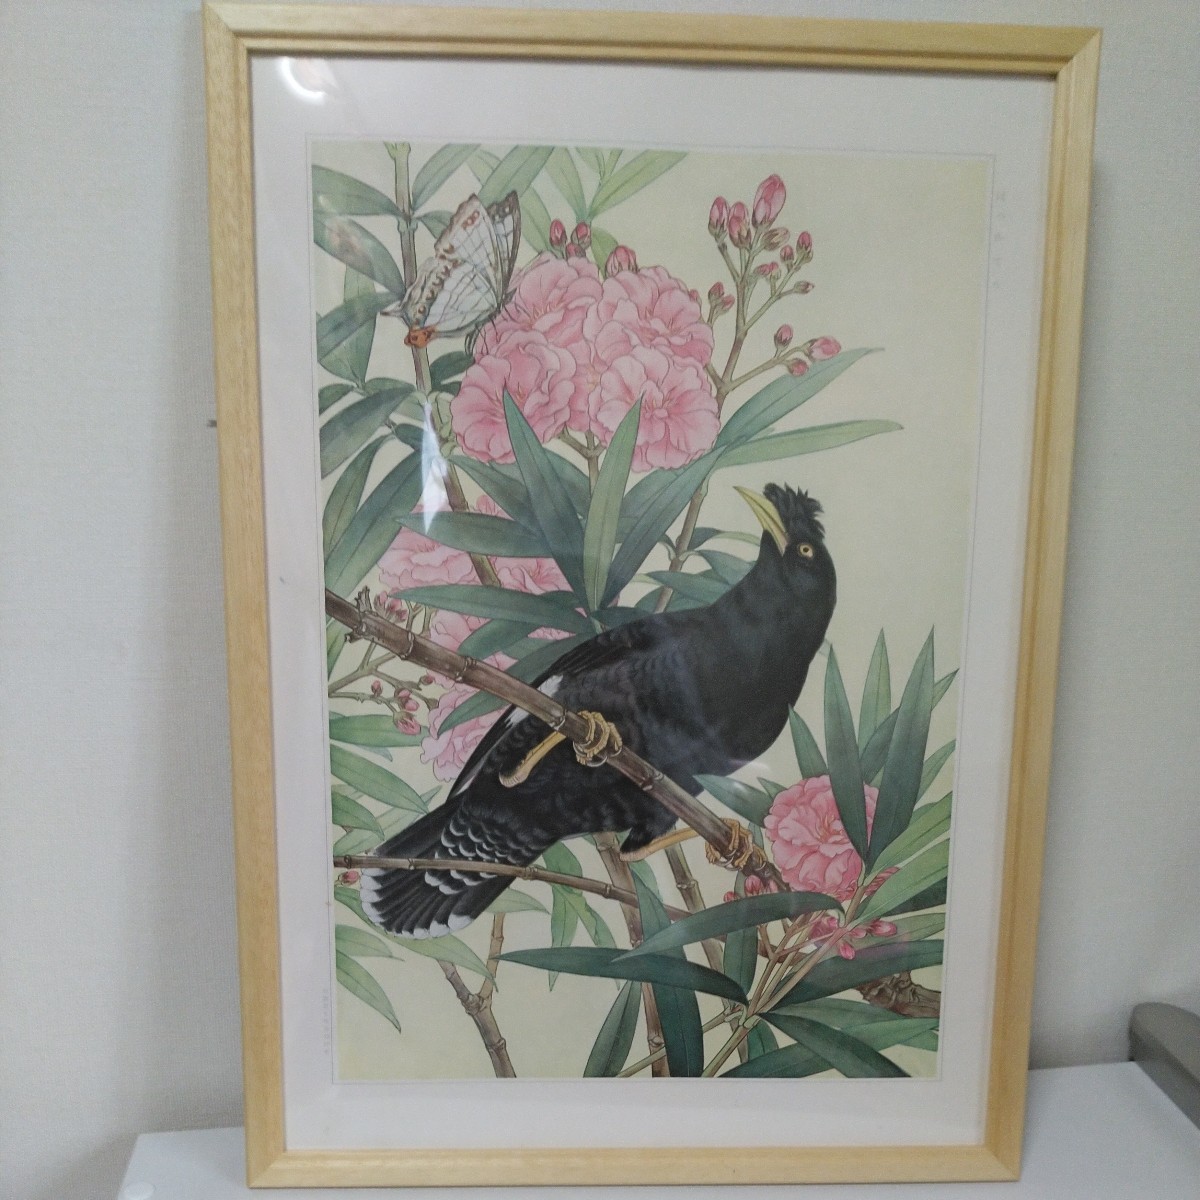 ボタニカルアート　鳥類写生図譜刊行会　ハッカチョウ(八哥鳥)とキョウチクトウ(夾竹桃)　水彩画　日本画 複製_構図が素敵です。